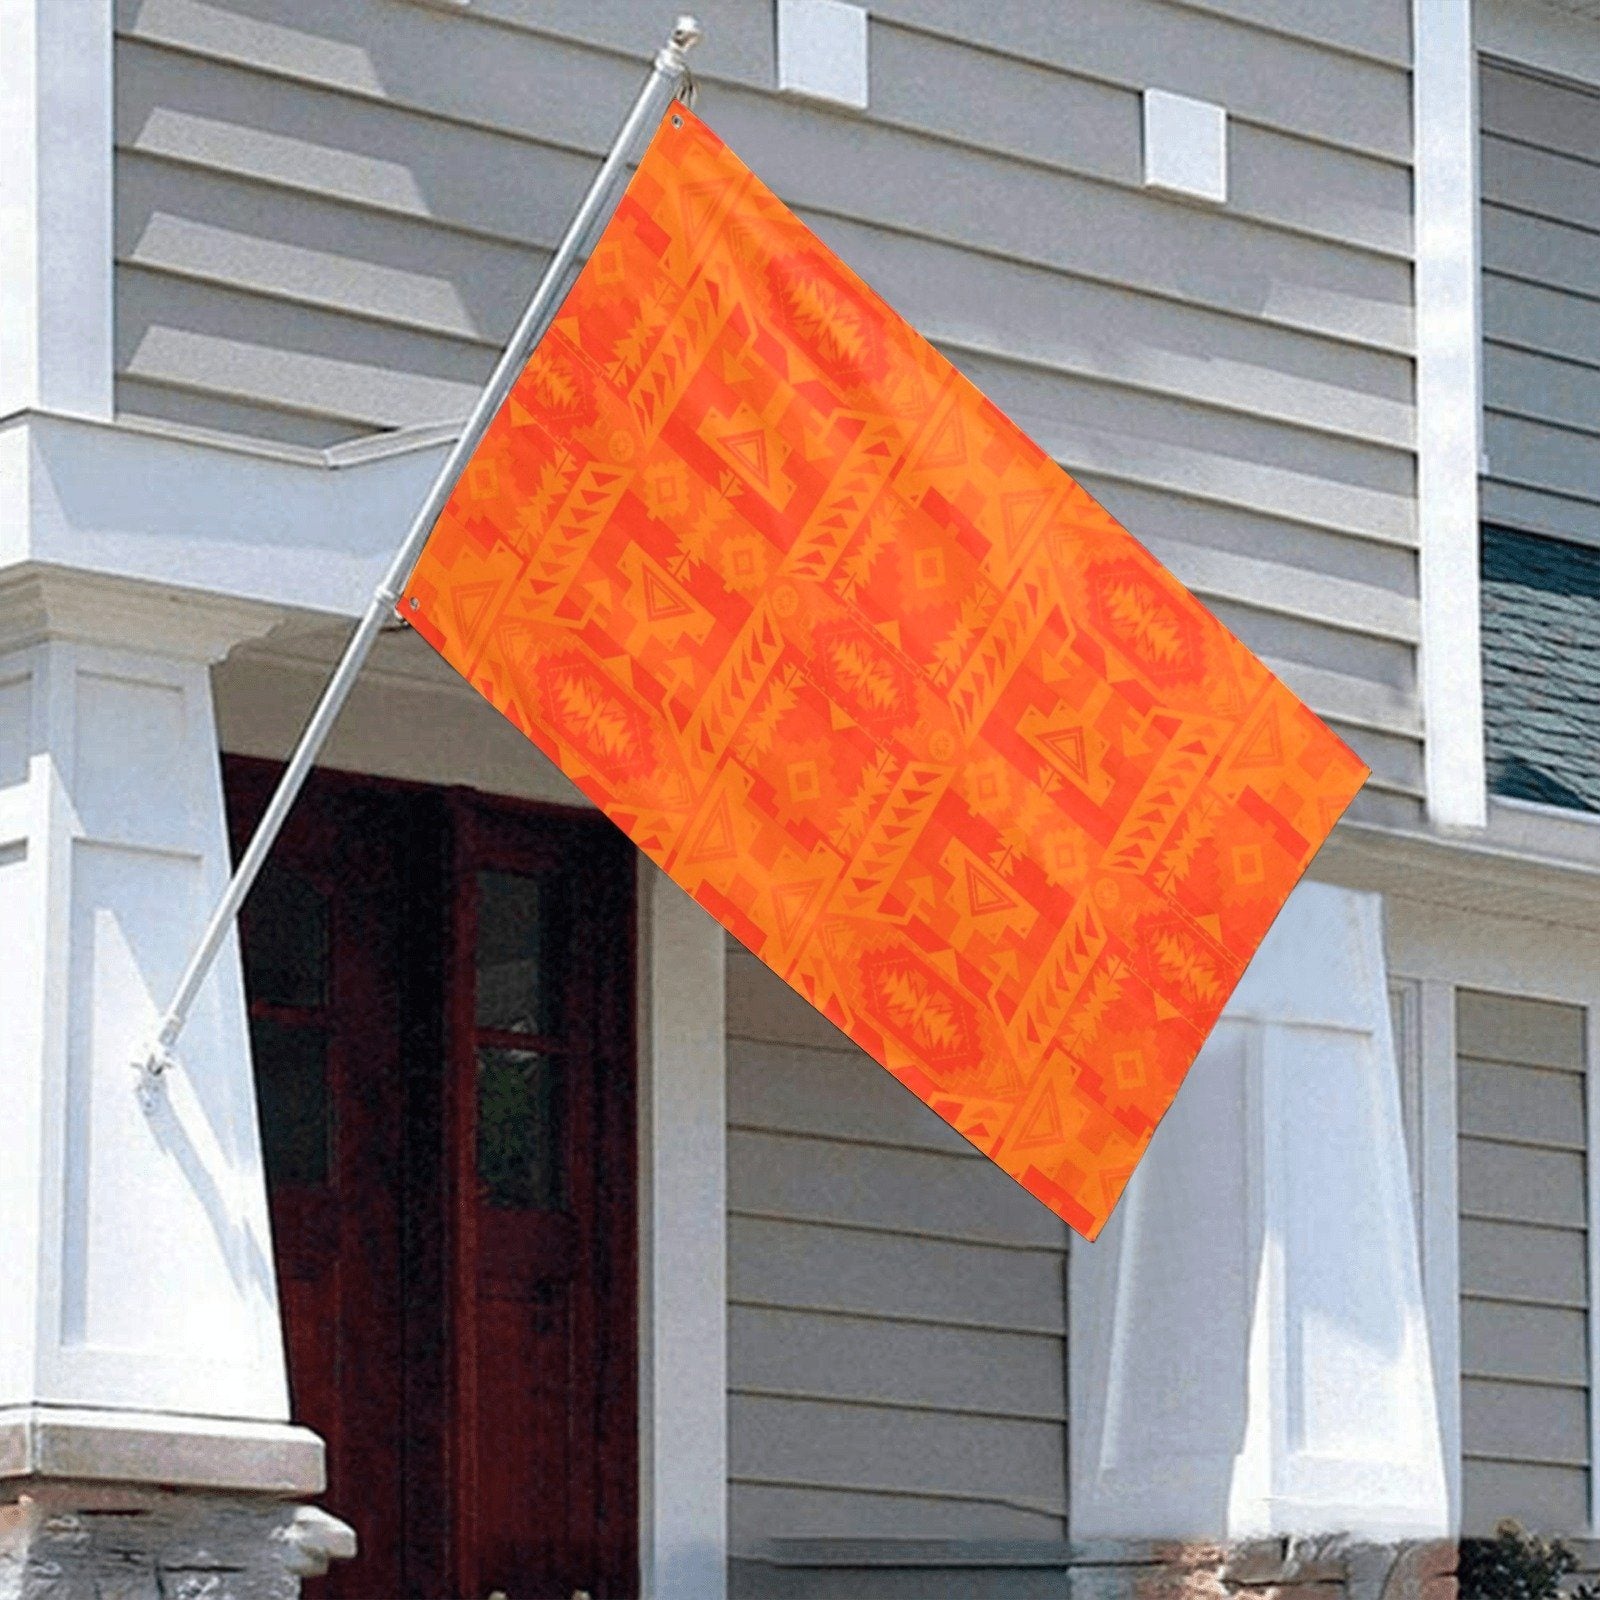 Chiefs Mountain Orange Garden Flag 59"x35" Garden Flag 59"x35" e-joyer 